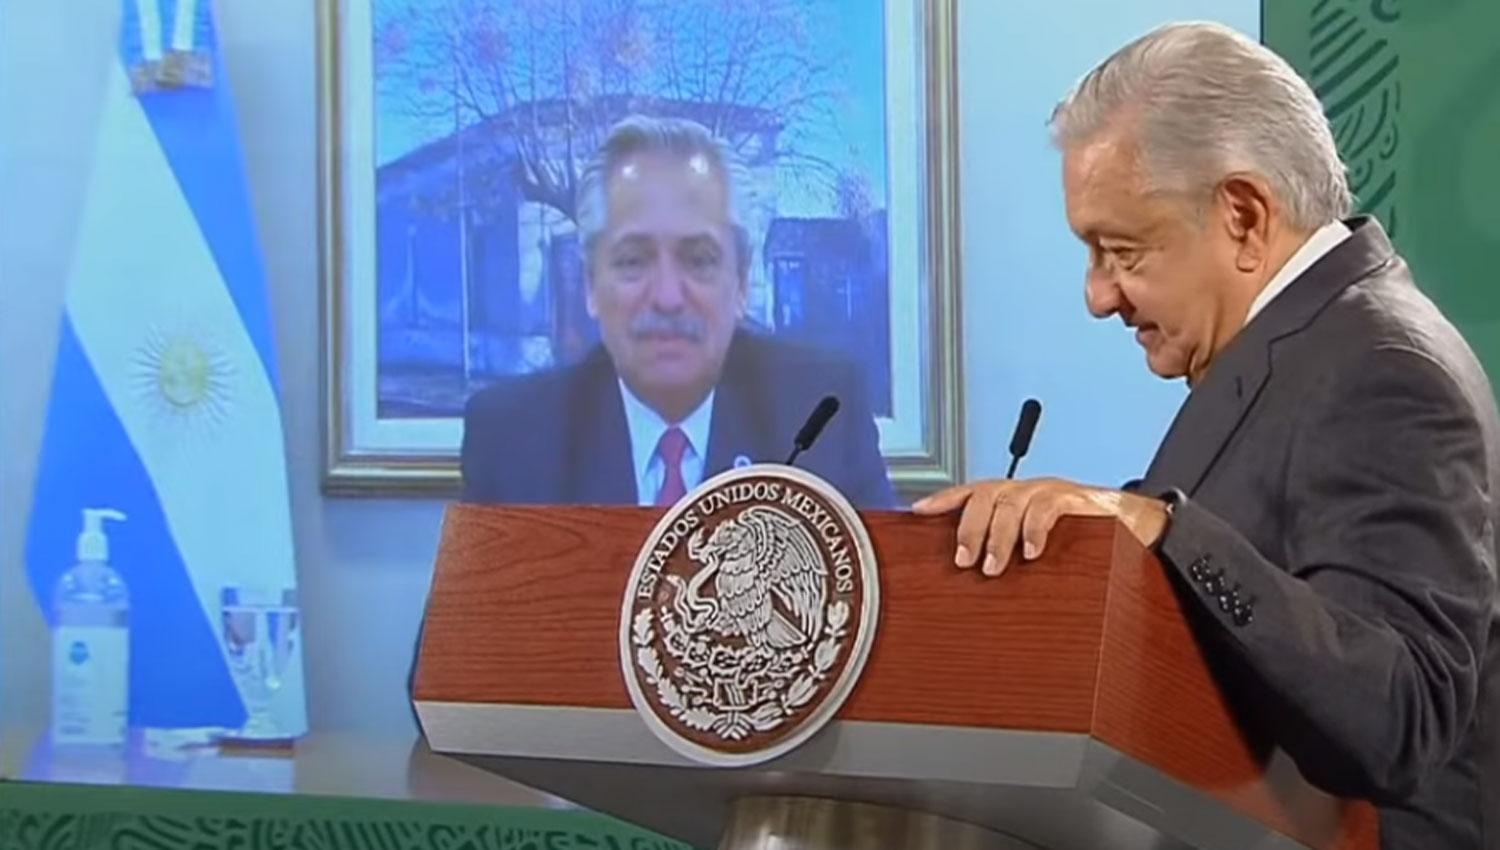 HALAGOS. Fernández y López Obrador intercambiaron elogios durante la conferencia de prensa.